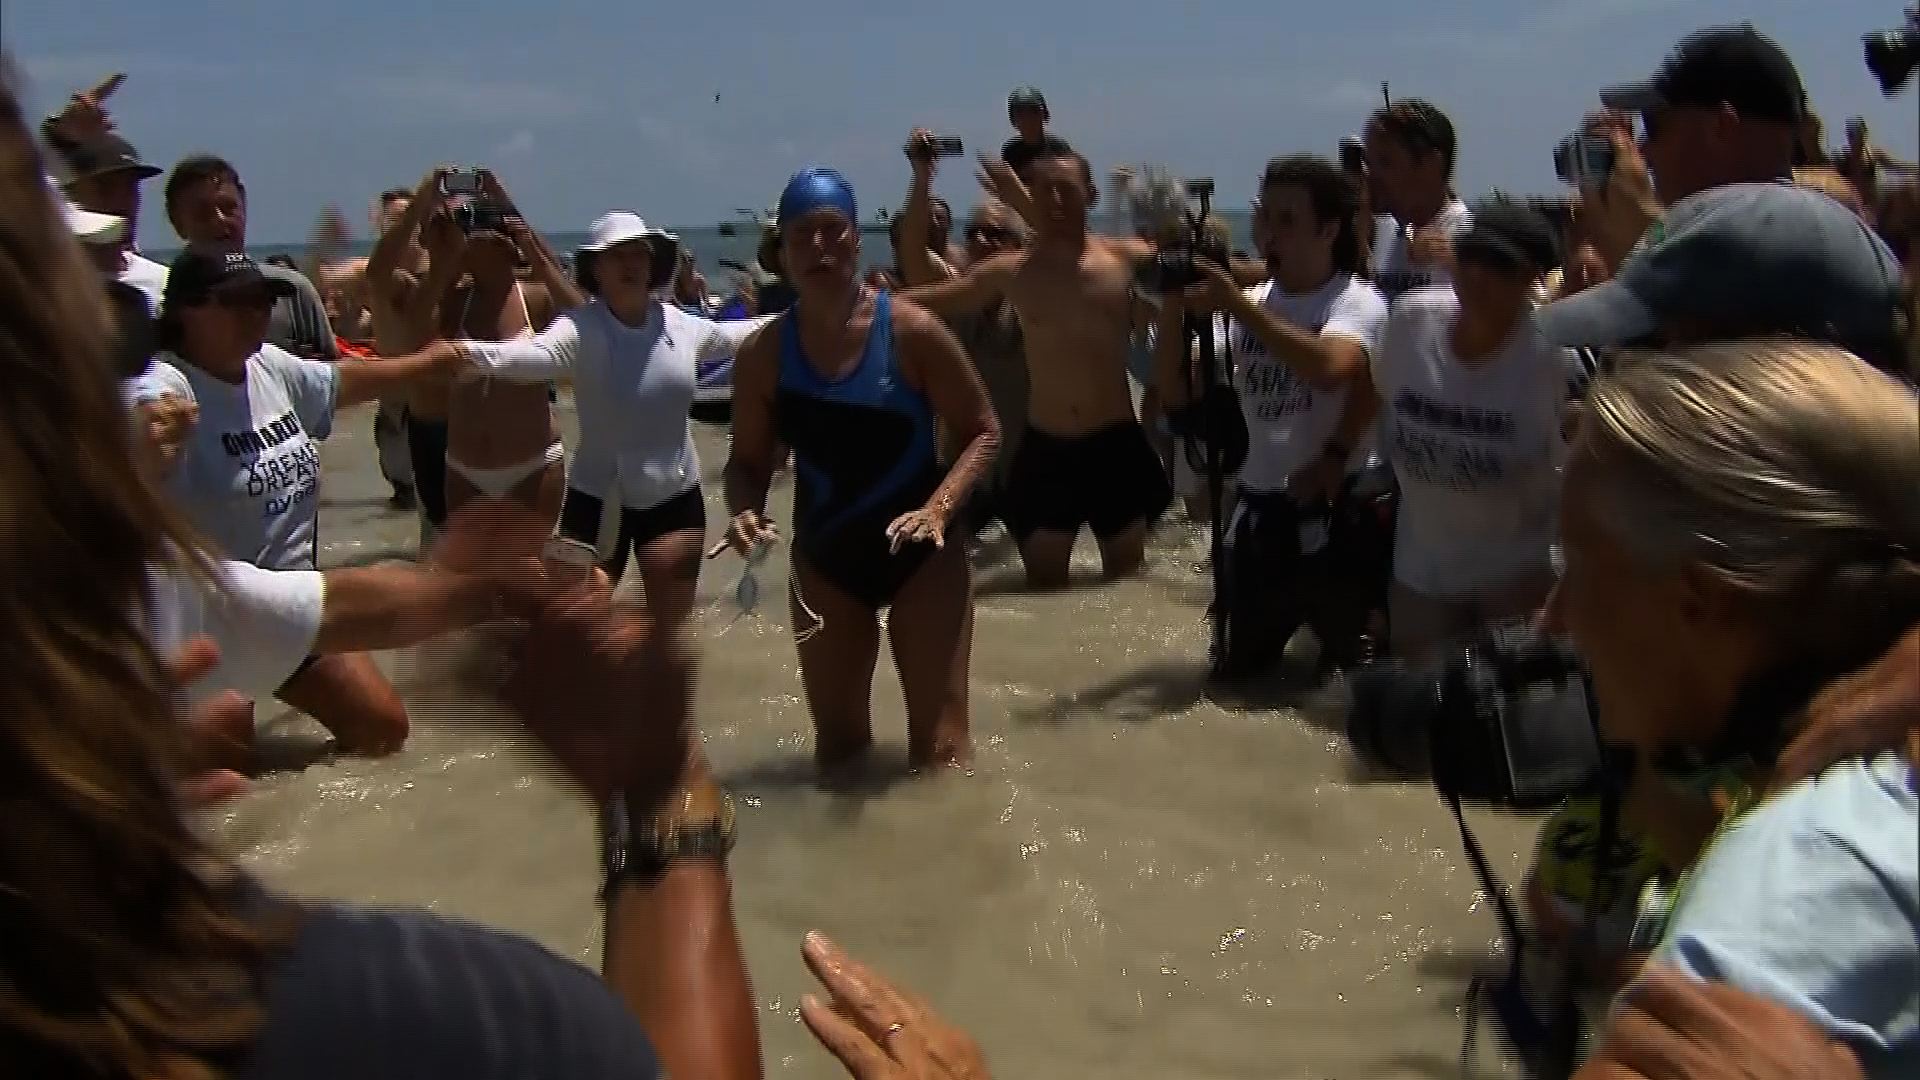 La hazaña de Diana Nyad, una nadadora de 64 años (Video)